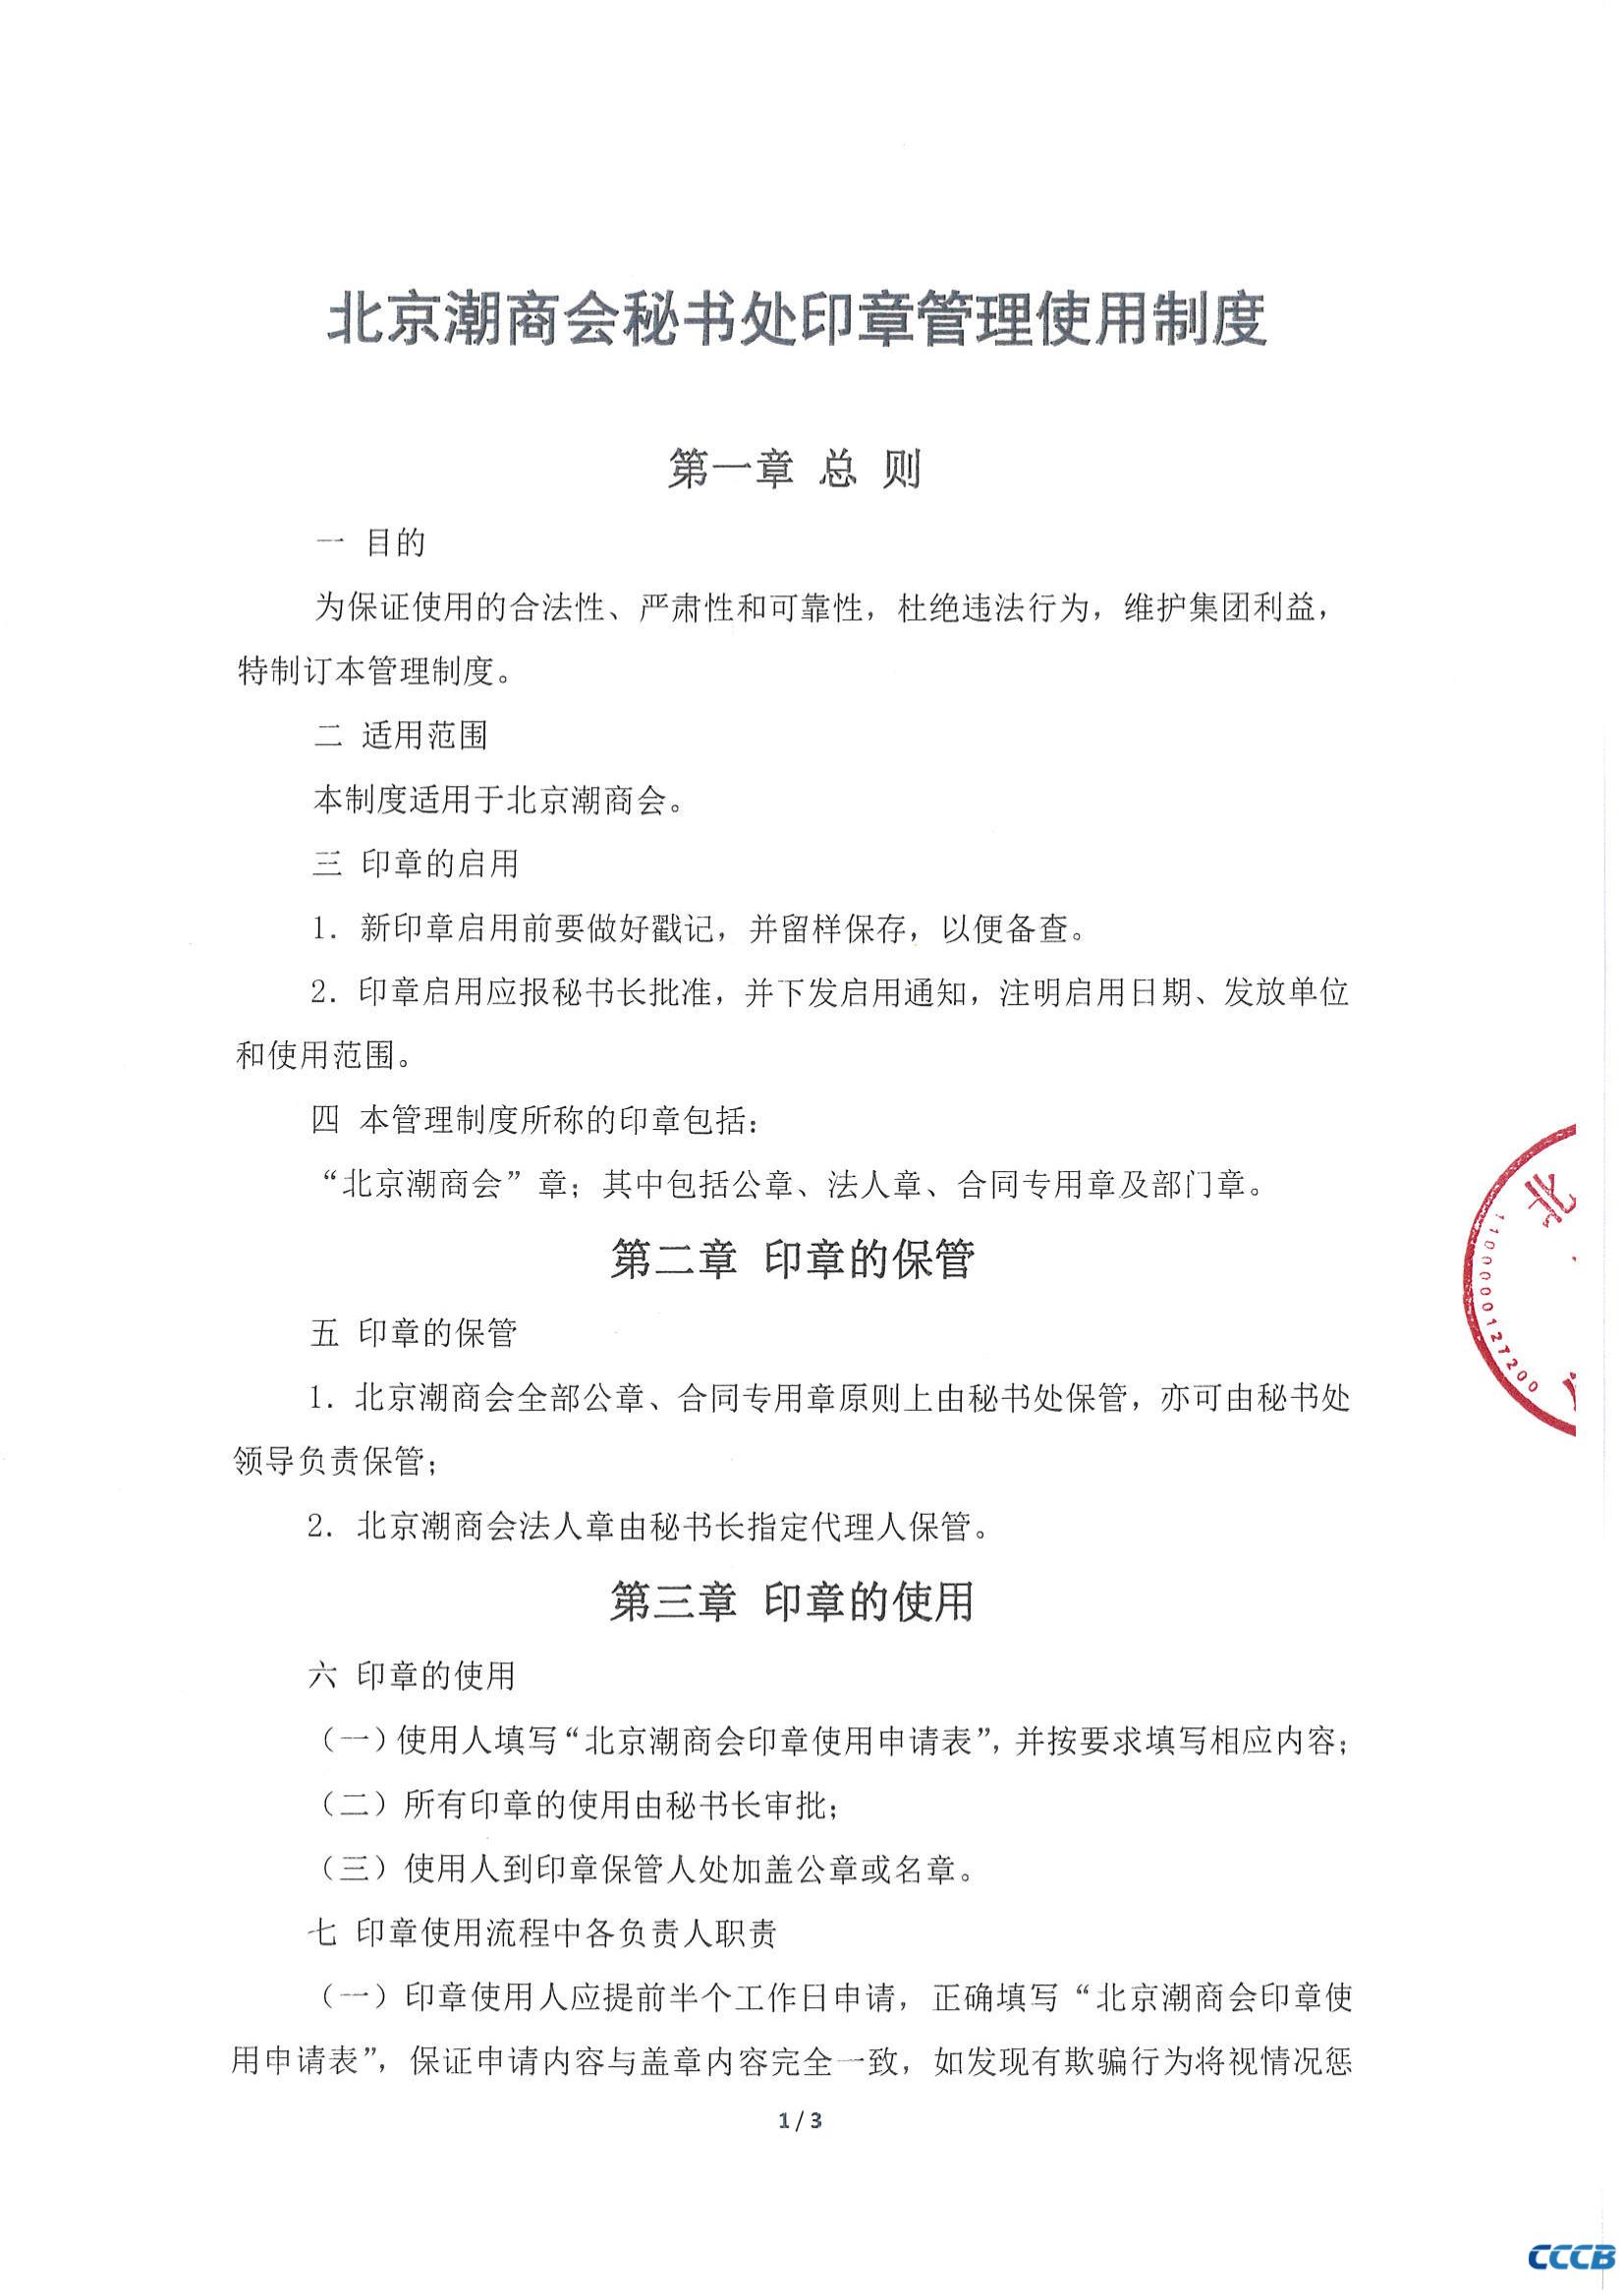 北京潮商会秘书处印章管理使用制度